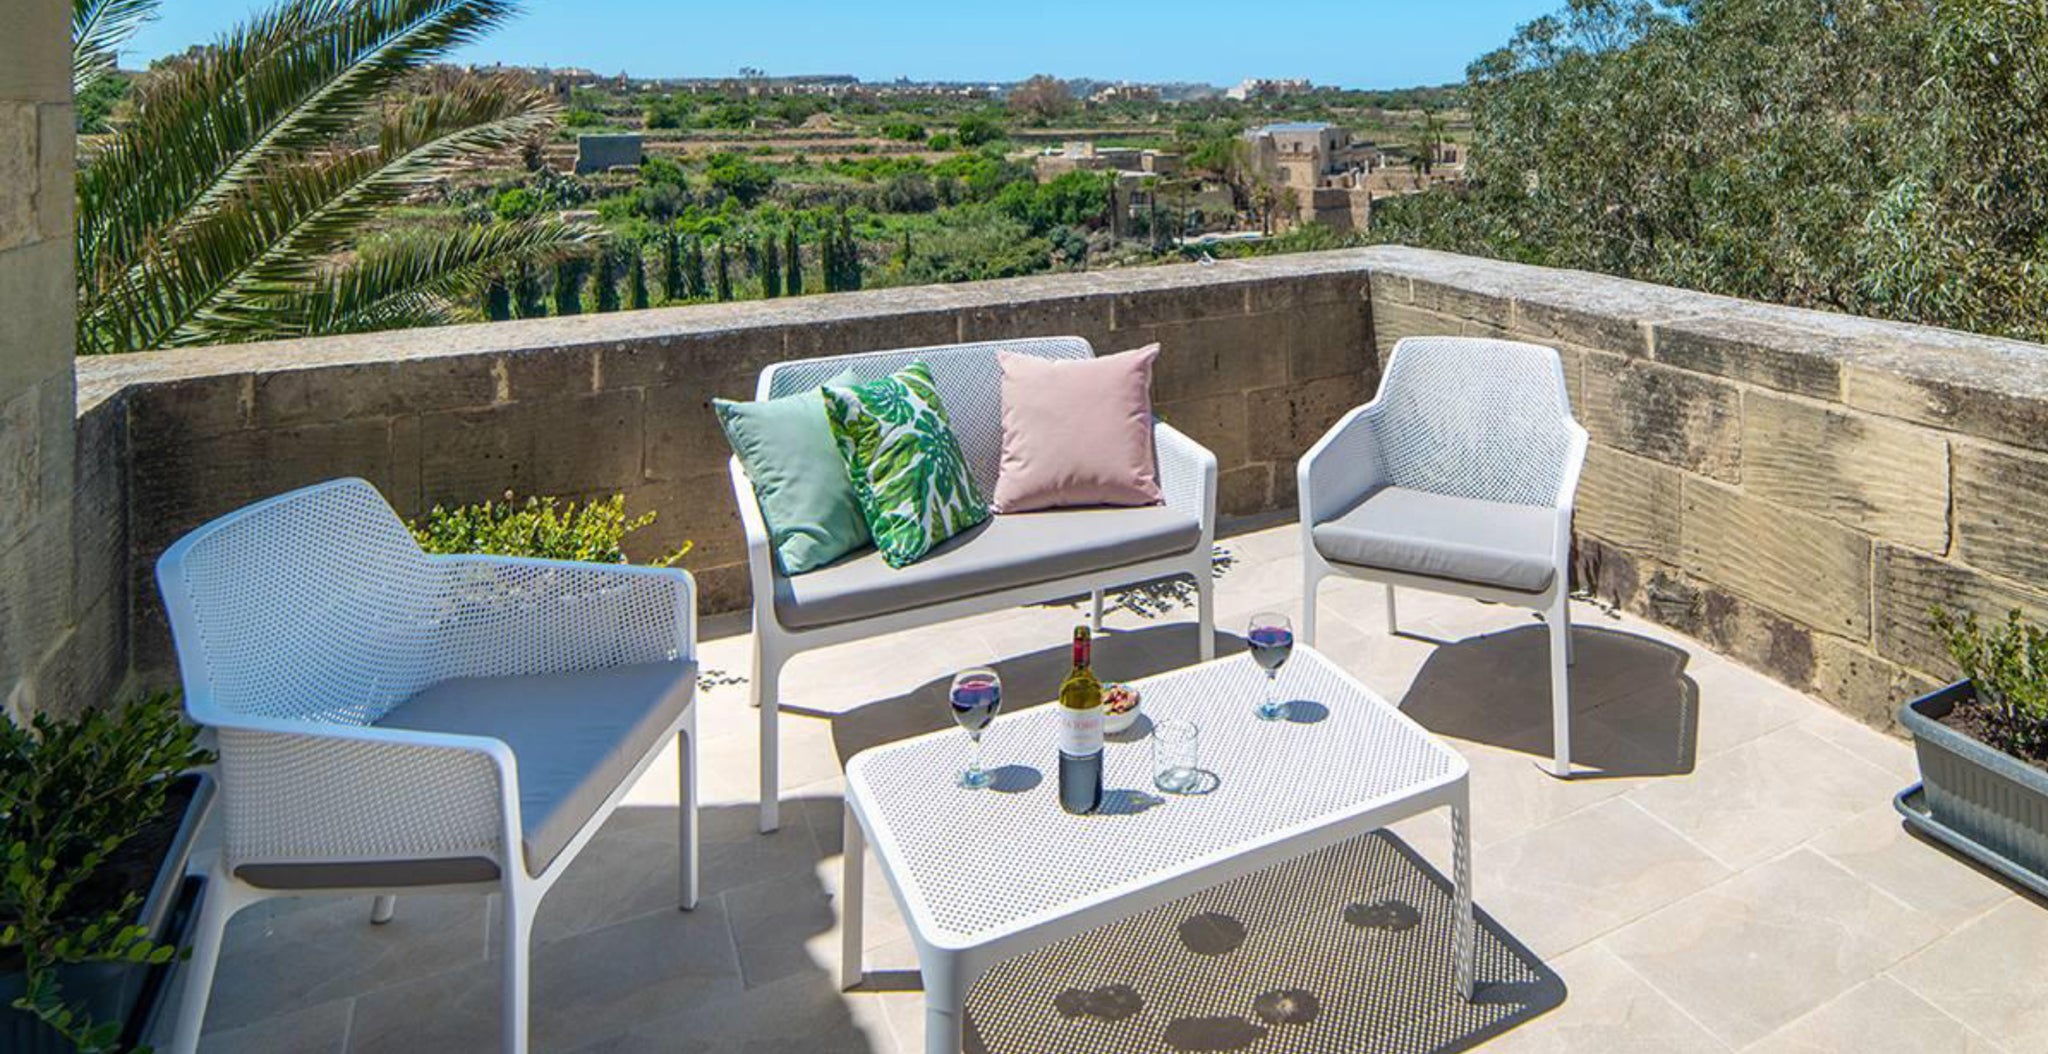 Table en filet, avec chaises en filet et banc en filet blanc sur terrasse avec vue sur un village méditerranéen